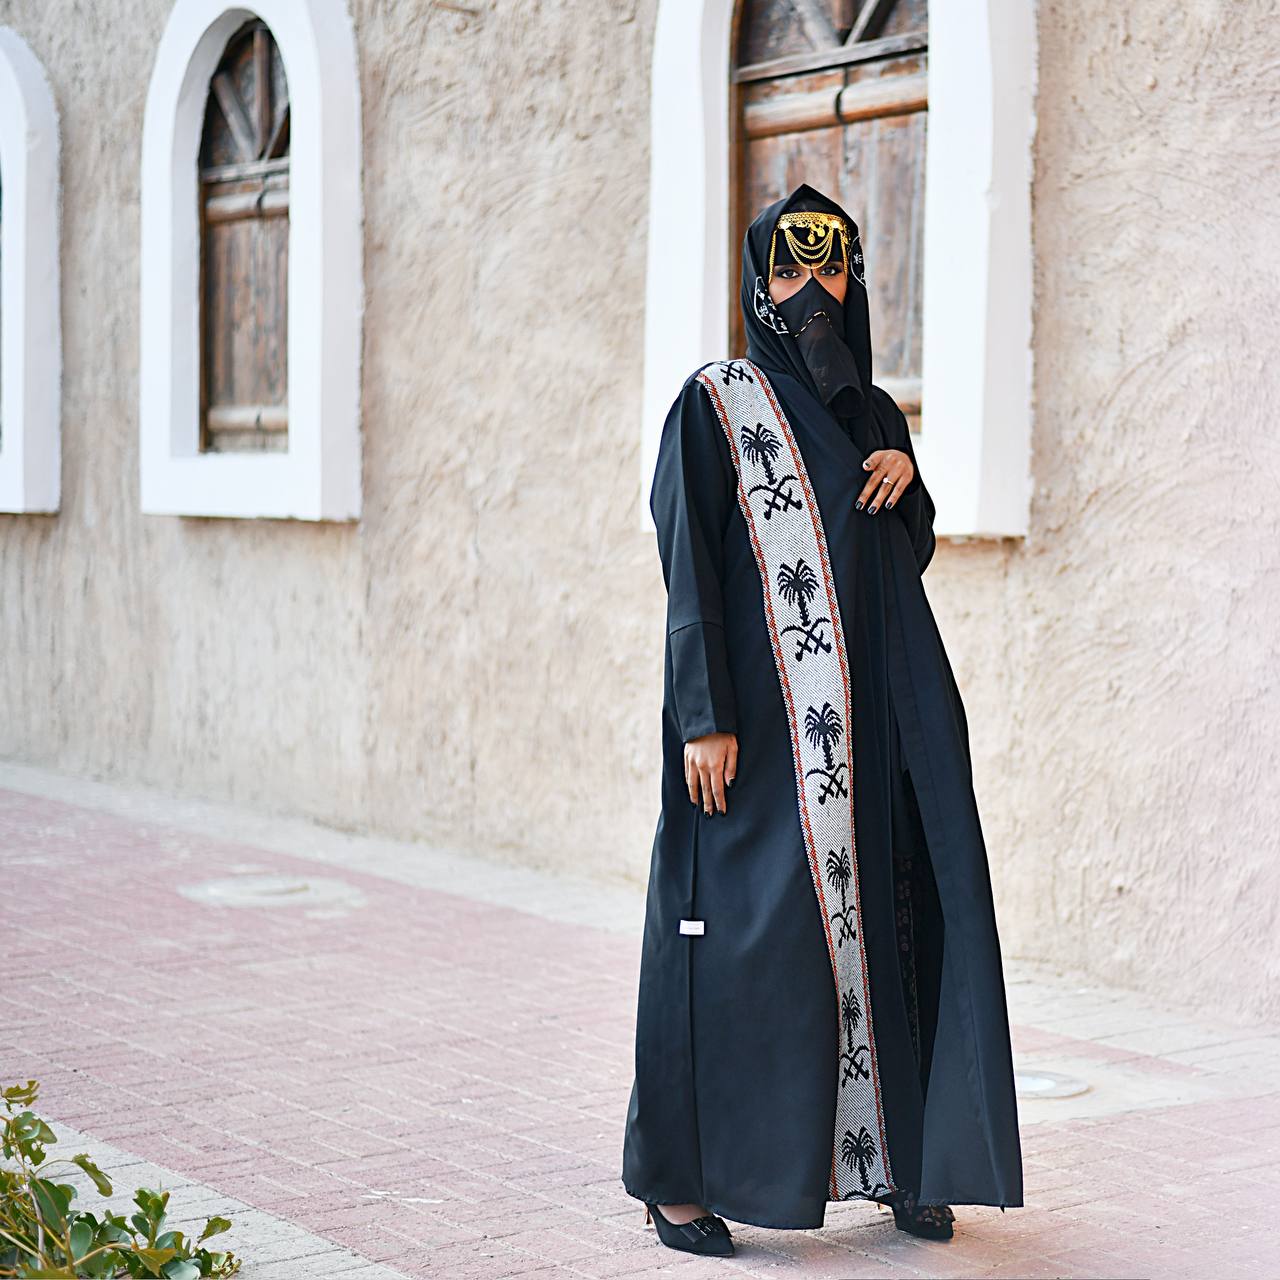  عباية بسدو تراثي يمثل شعار المملكة العربية السعودية ( السيفين والنخلة ) 